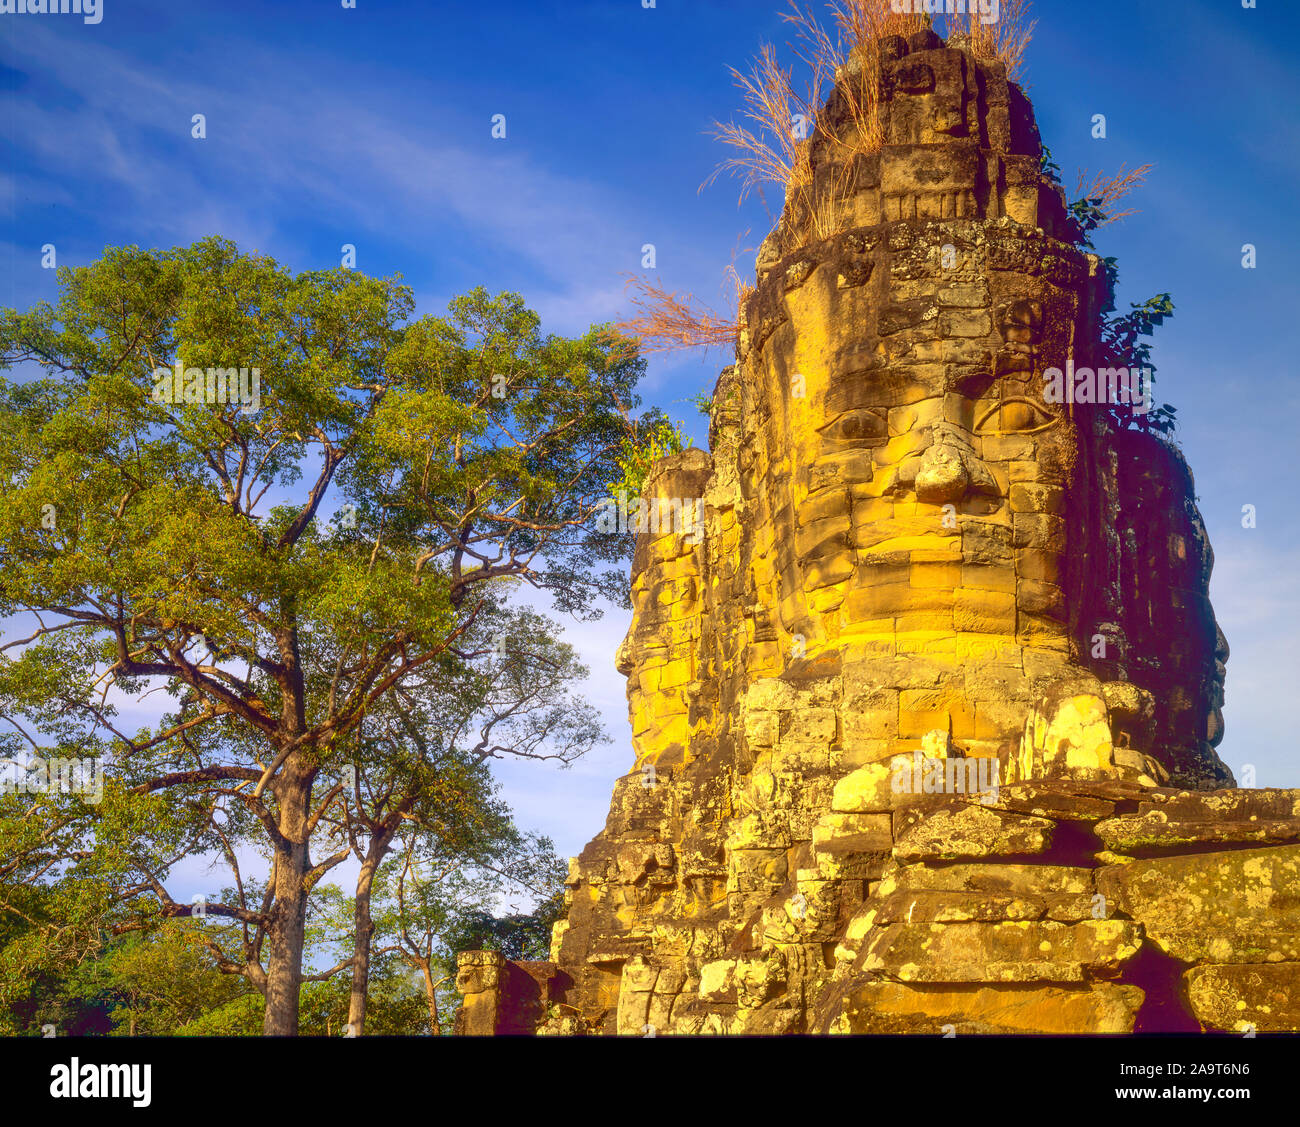 Temple Bayon, Angkor Watt Parc Archéologique, Cambodge, Angkor Thom, Ville fof construit 1100-1200 ANNONCE Khmers ruines de la culture en Asie jungle Banque D'Images